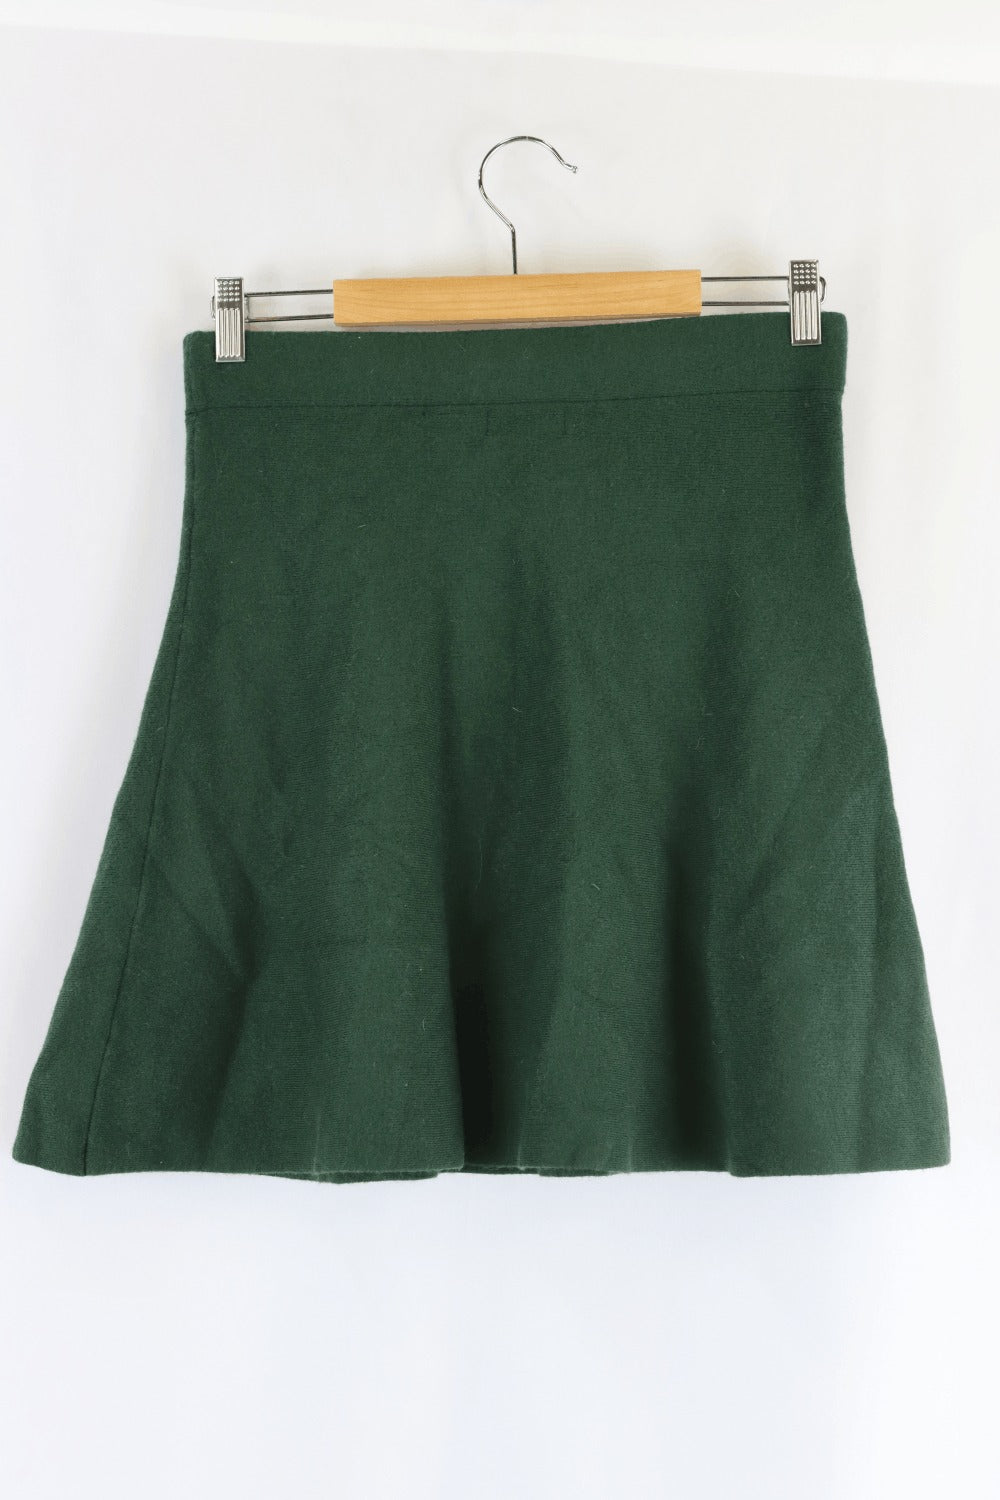 Oxford Green Skirt 12.